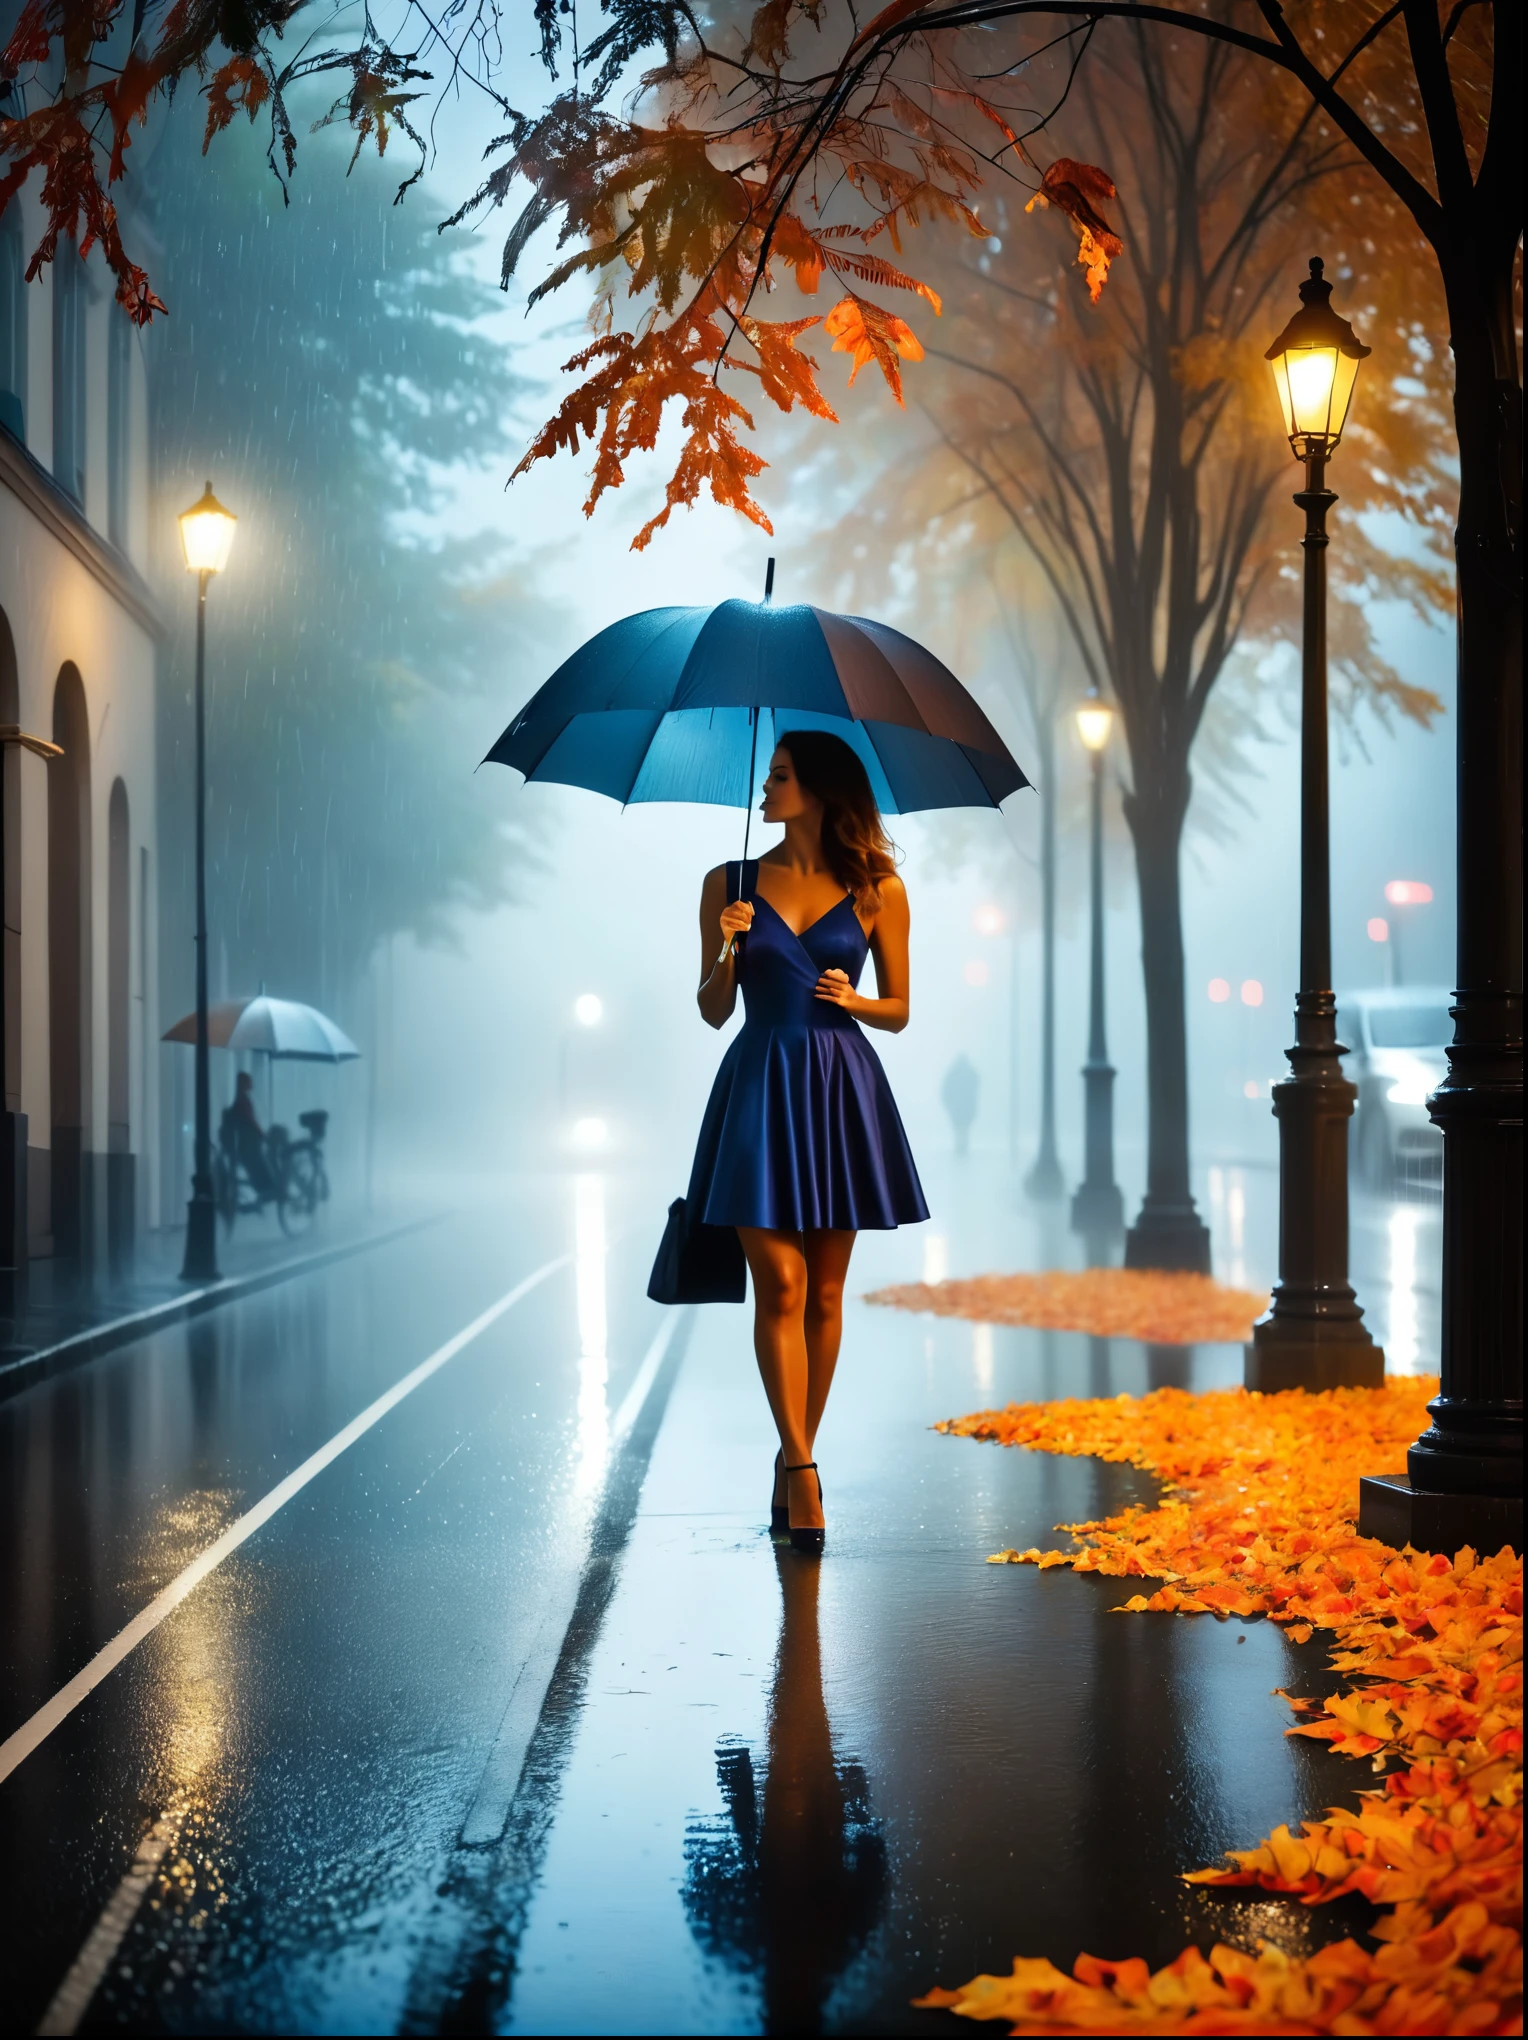 穿着紧身连衣裙、手拿雨伞的女人, in einer 蒙蒙en Stadt, 街道上五彩缤纷的秋叶, Kuno Veeber 拍摄的照片, pixabay 比赛获胜者, 概念艺术, 站在雨中, mysterious 女士, 漂亮的女孩, 在雨中站立, 单人带伞, 女士 ((轮廓)), ((蒙蒙)) 下雨, 阴影下的女性形象, 在雨天环境中, 阴雨天气, 背景是雨天的道路 , ((雾与光)), ((从后面看)), 前方的光线